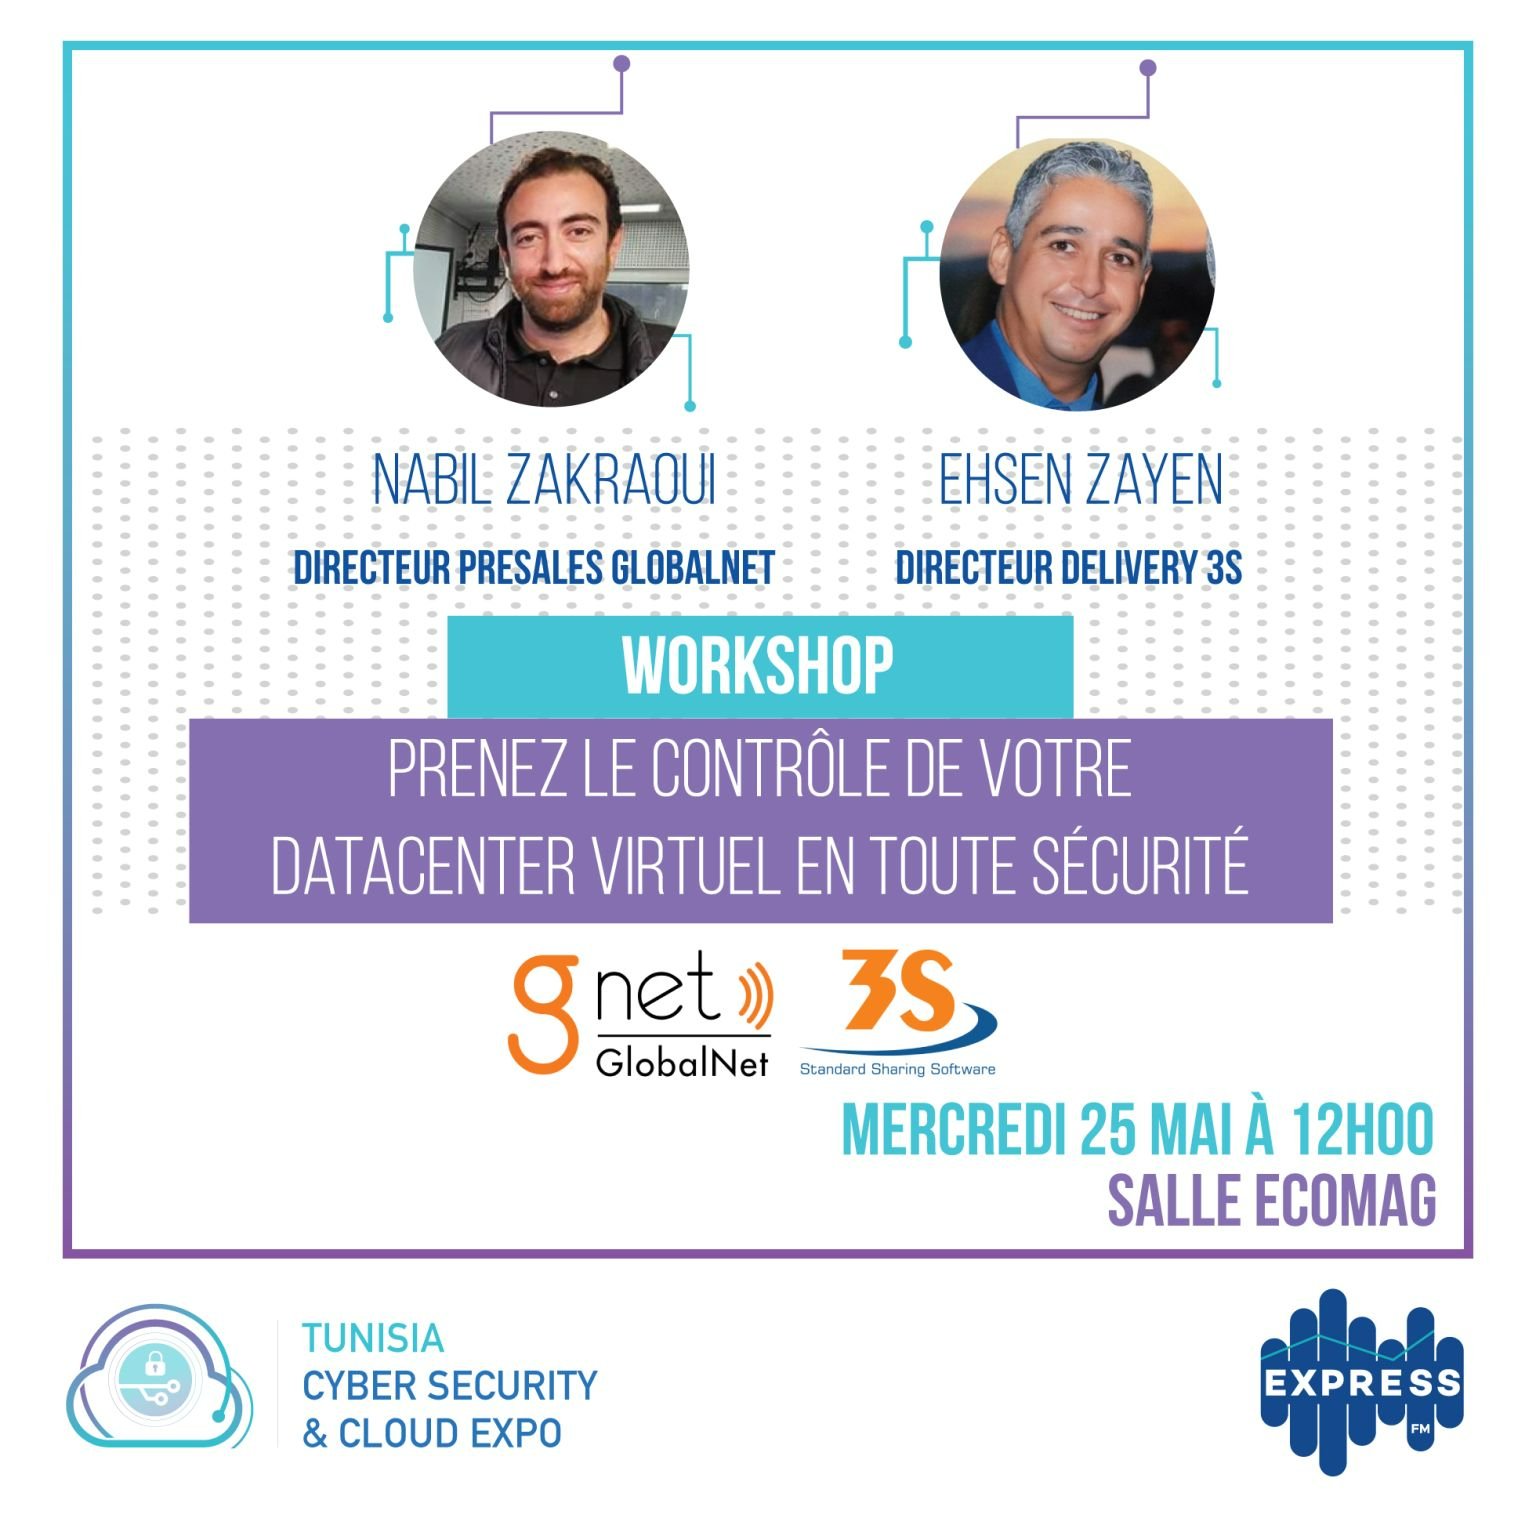 3S/Globalnet participe au 1er salon Tunisien dédié à la cybersécurité et au cloud computing